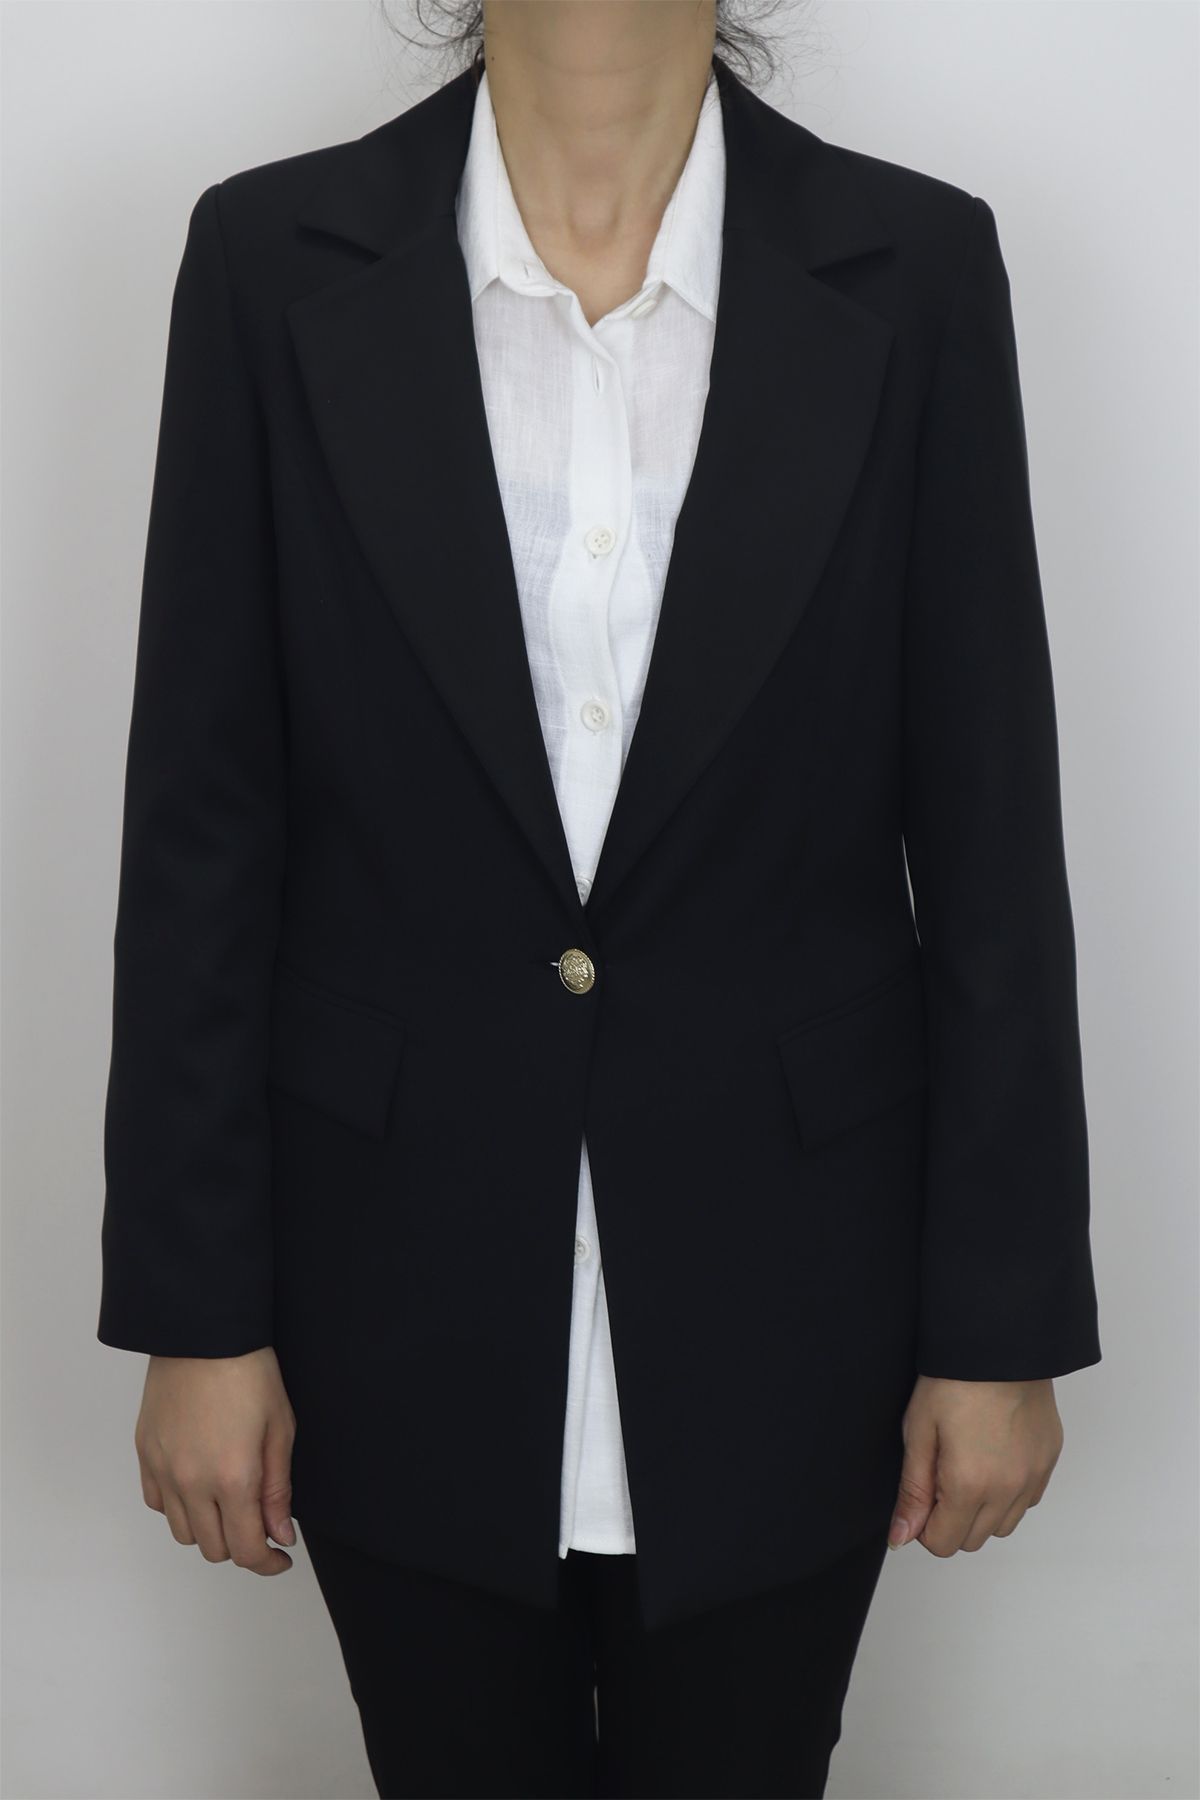 KLAPA Fistan Store  Siyah Klasik Kesim Normal Kalıp Tek Düğmeli Büyük Beden Yazlık Blazer Ceket